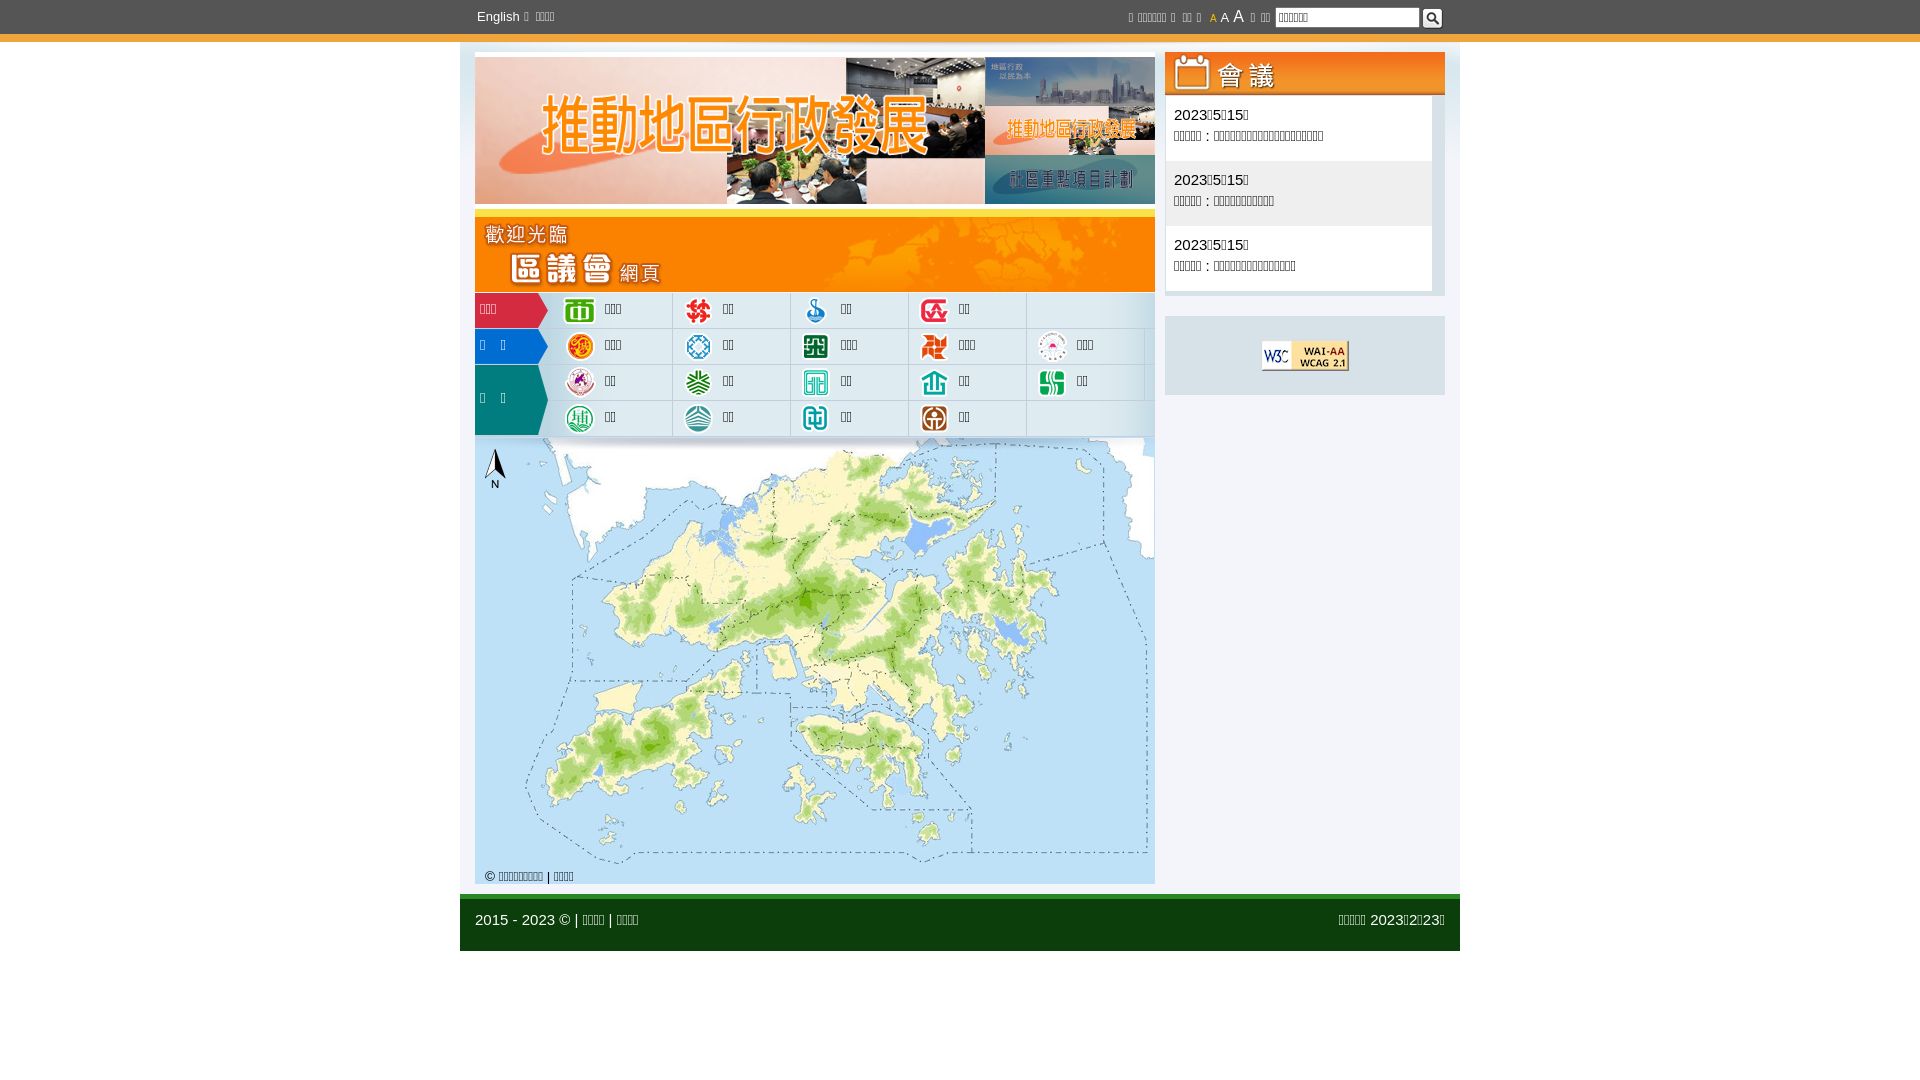 Estado web districtcouncils.gov.hk está   ONLINE